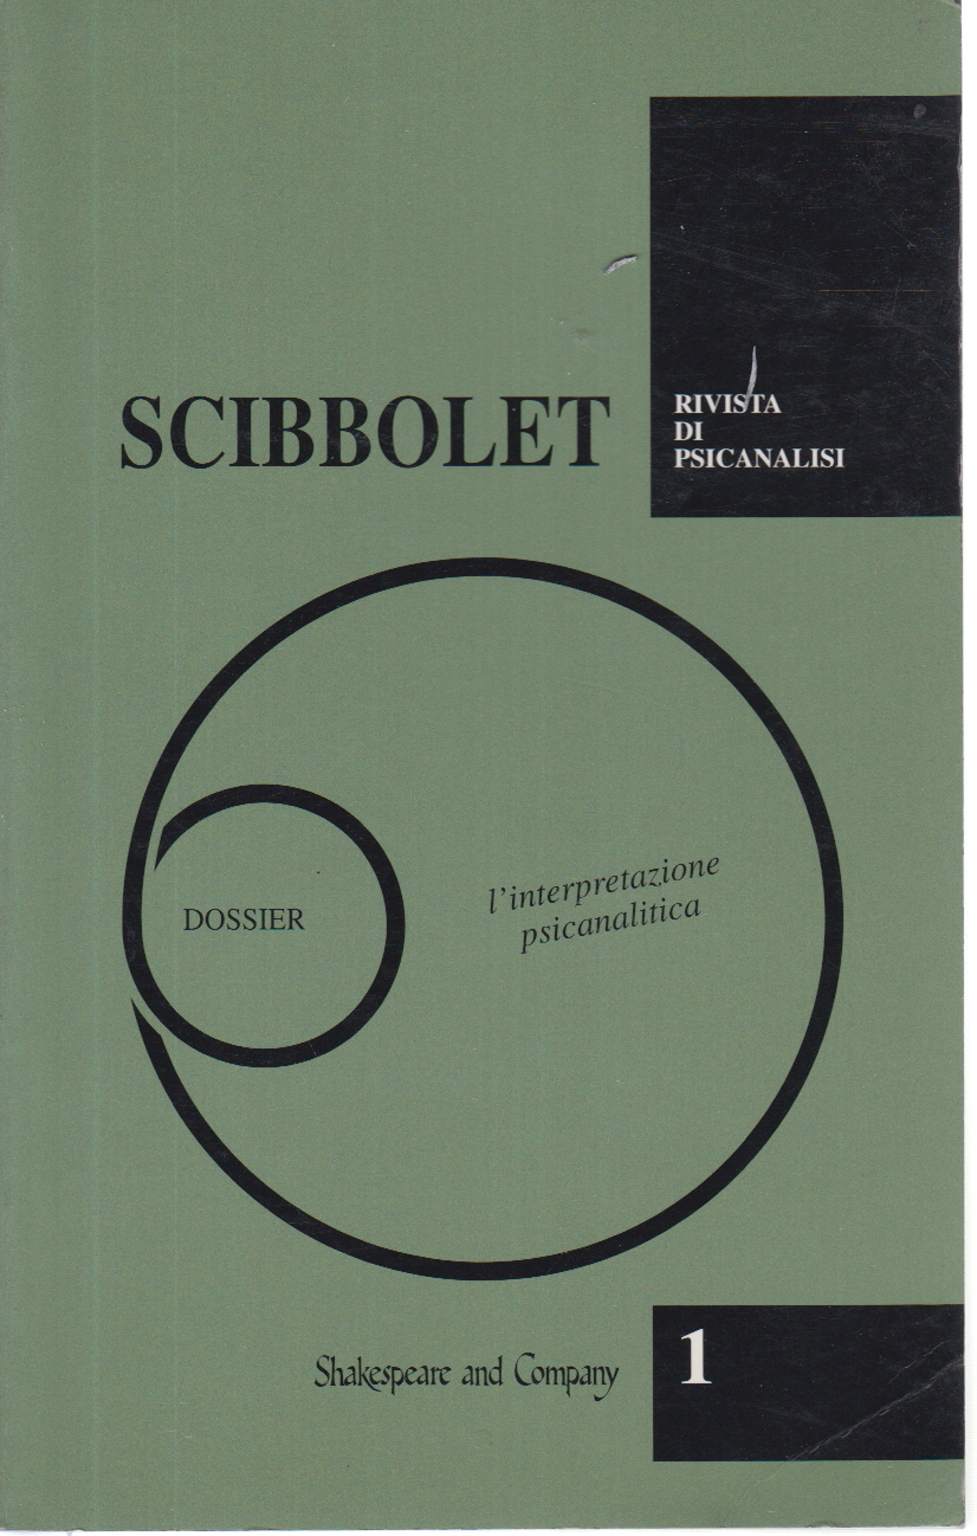 Scibbolet pas. 1 1994, s.un.